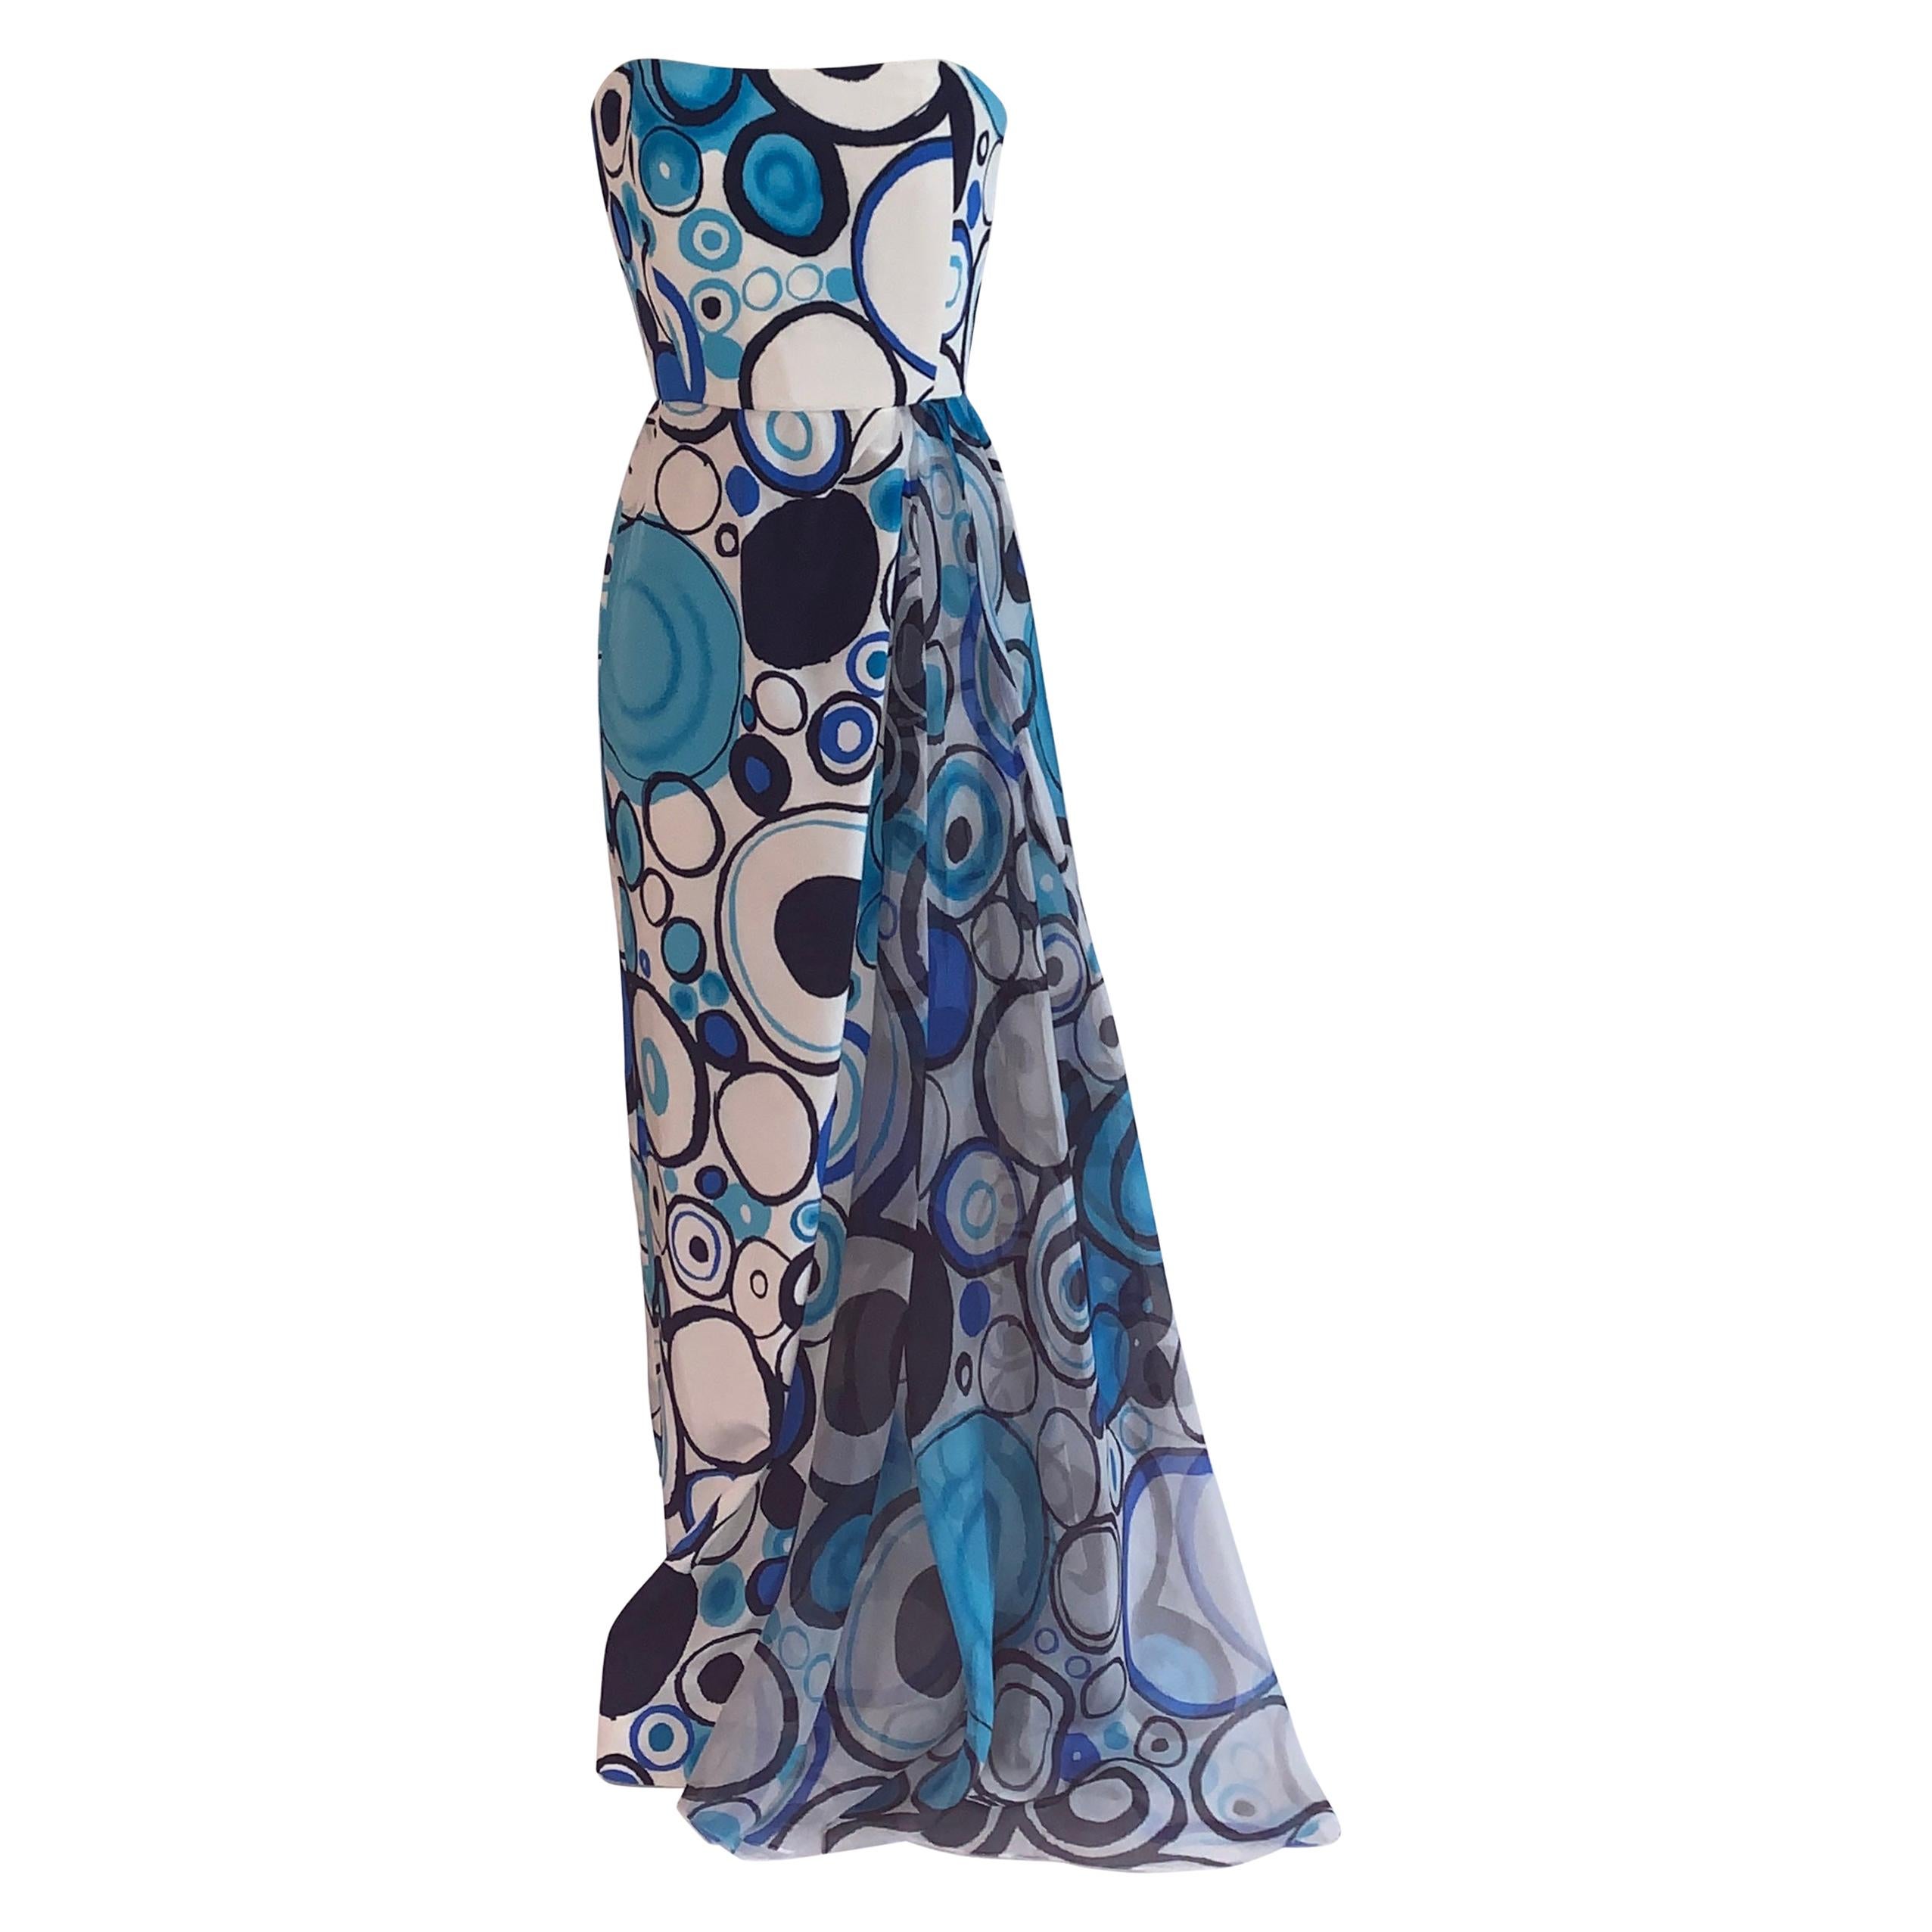 Ungetragenes Lily Samii Maxikleid aus blauer und weißer Seide mit abstraktem Kreismuster